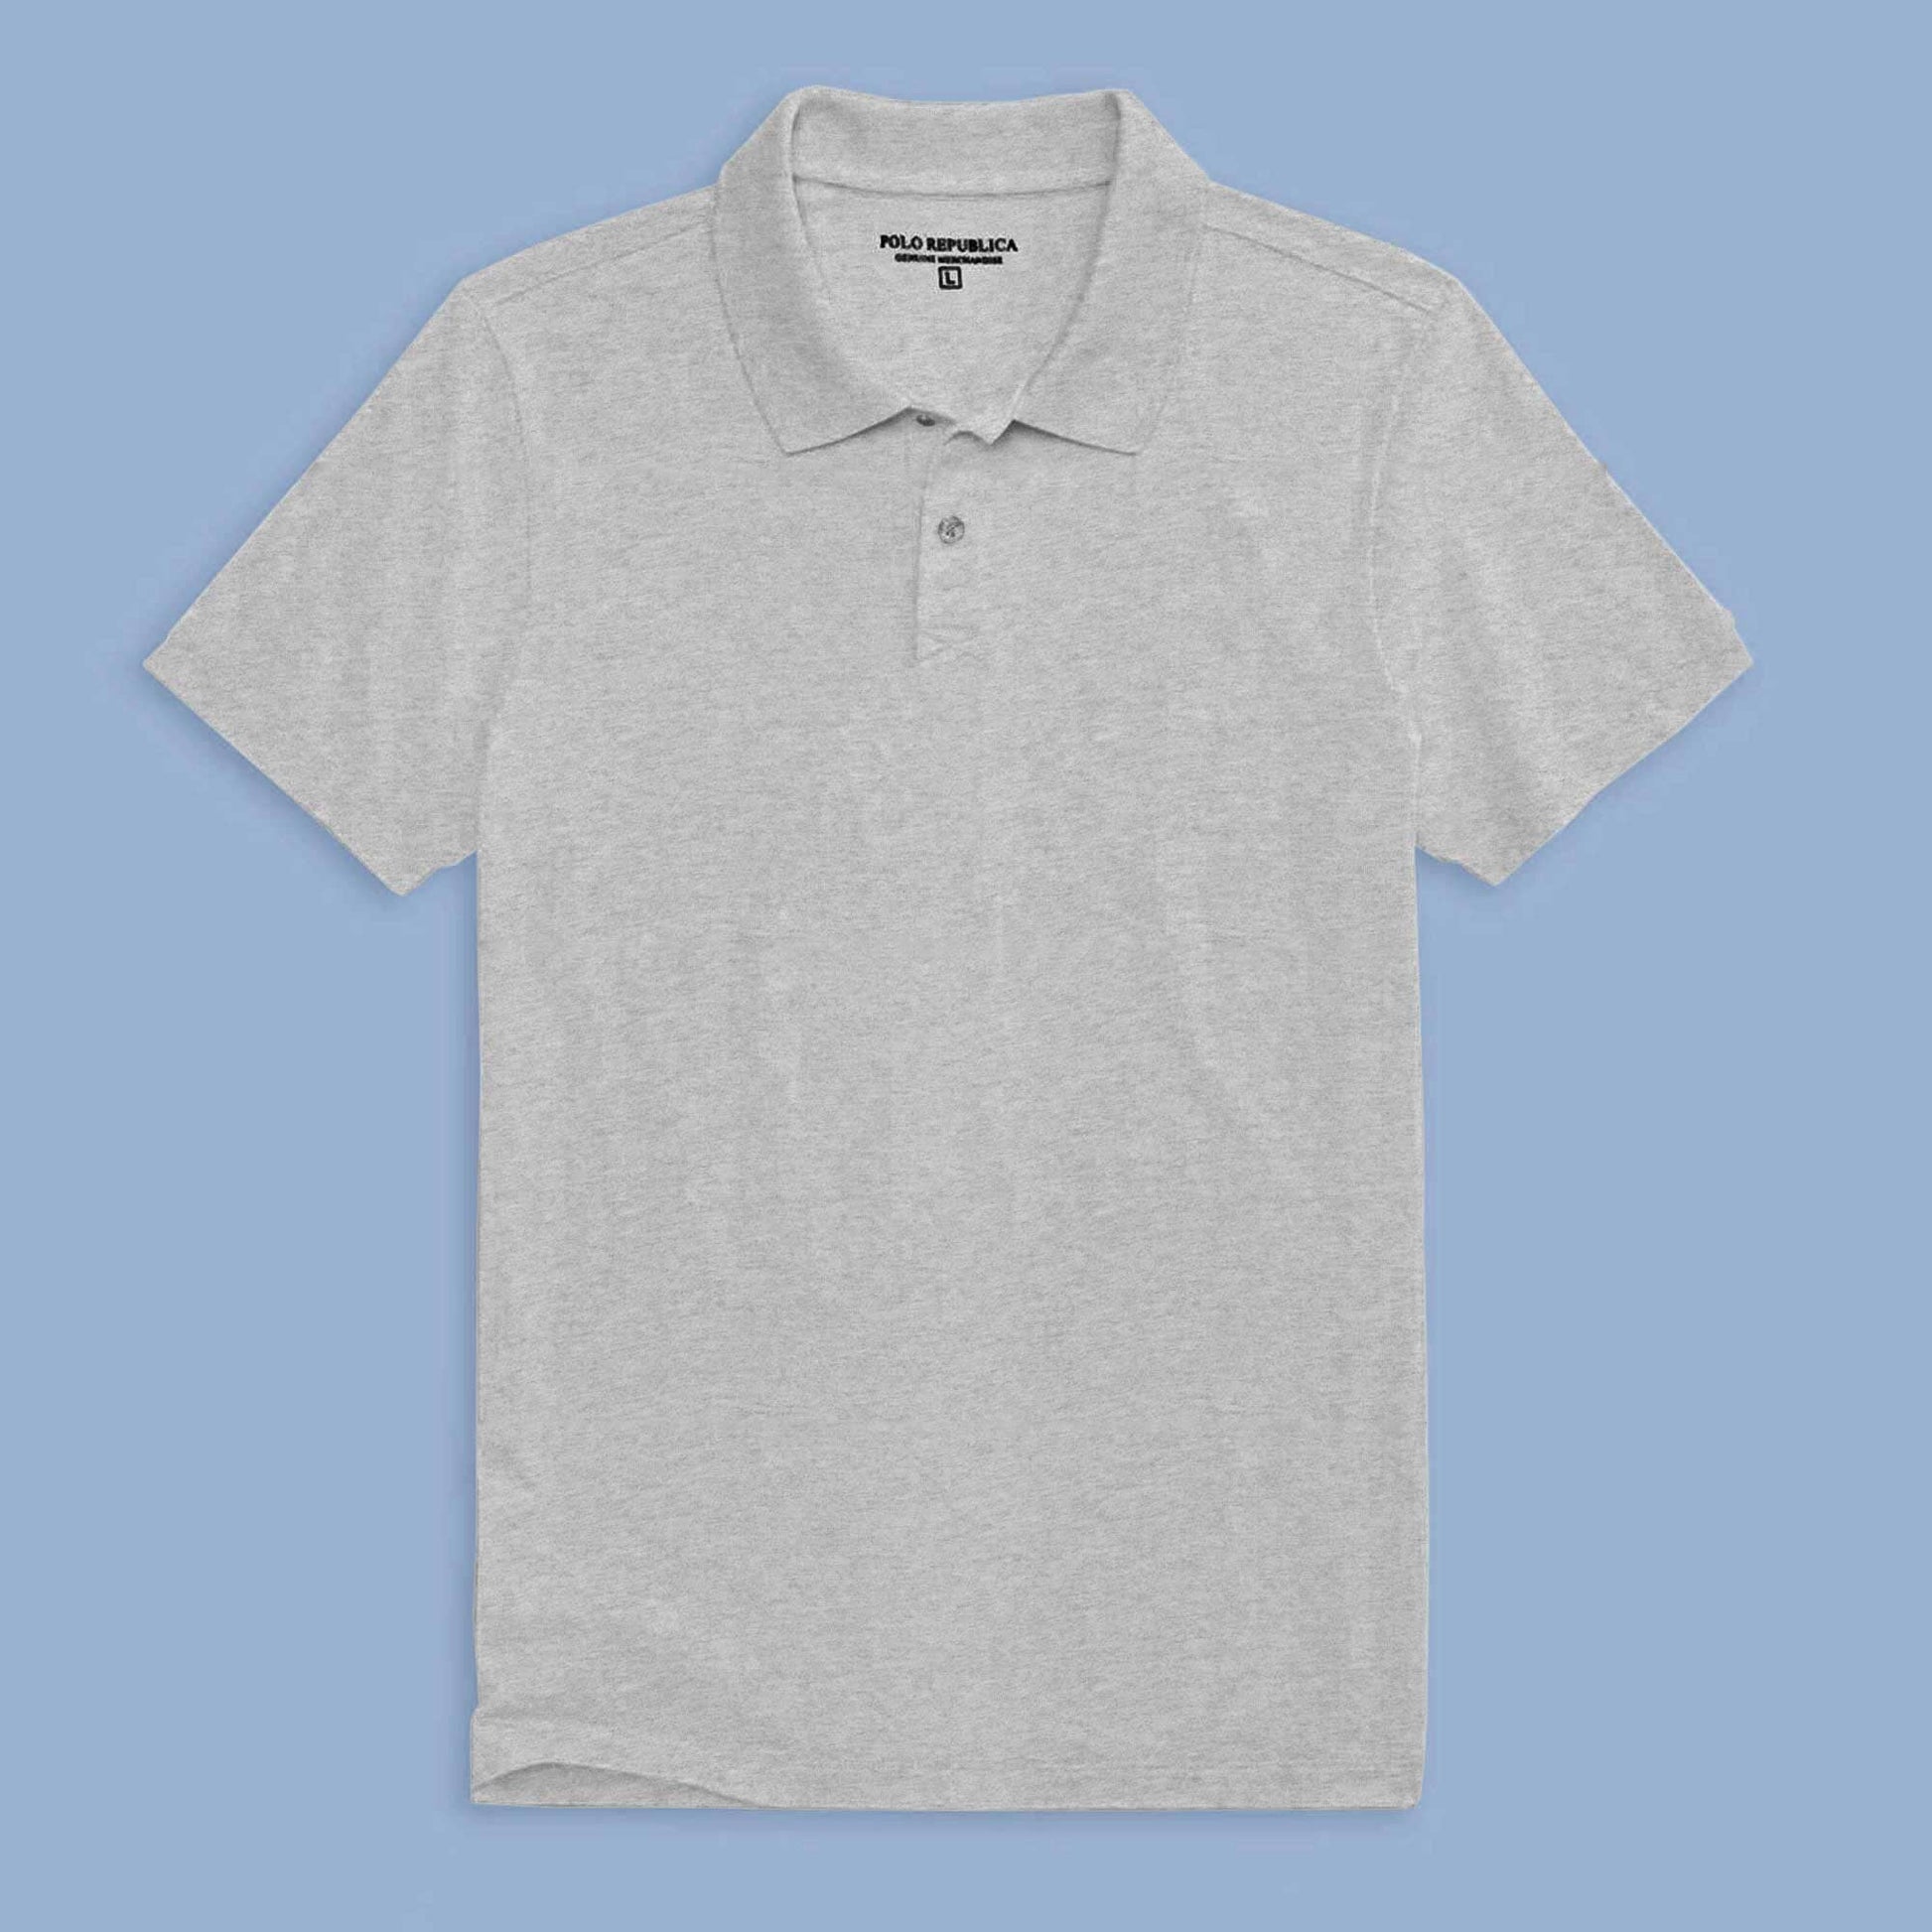 Polo Republica Men's Essentials Premium Short Sleeve Polo Shirt Men's Polo Shirt Polo Republica Melange Grey S 